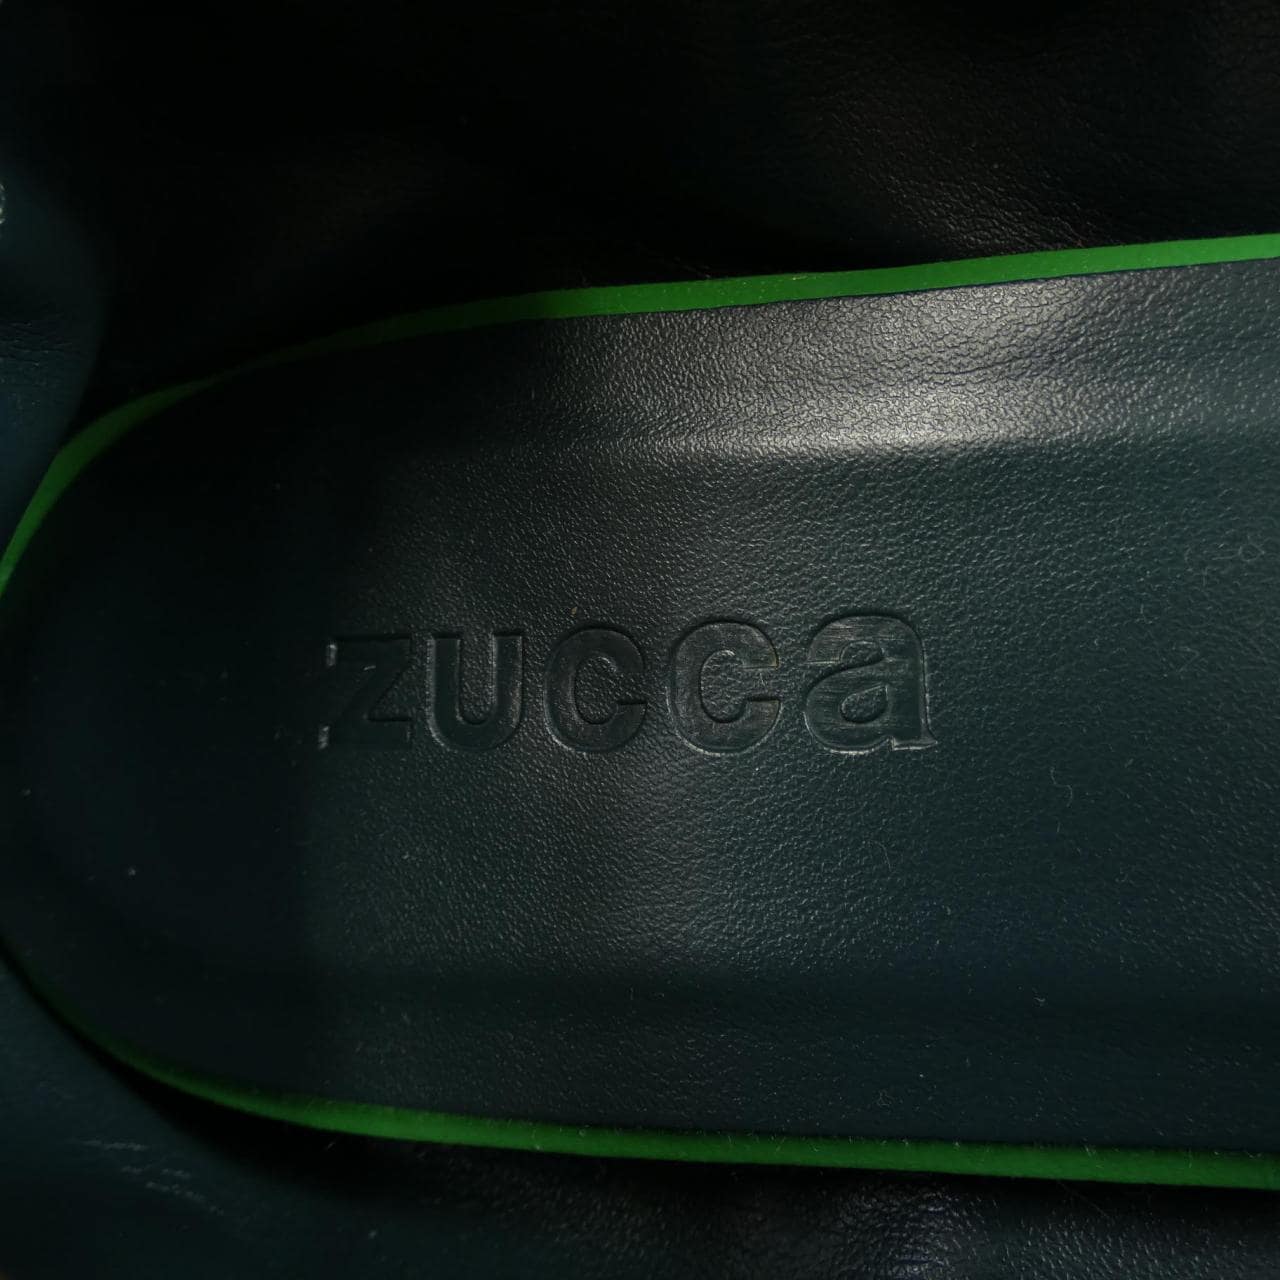 Zucca ZUCCA shoes